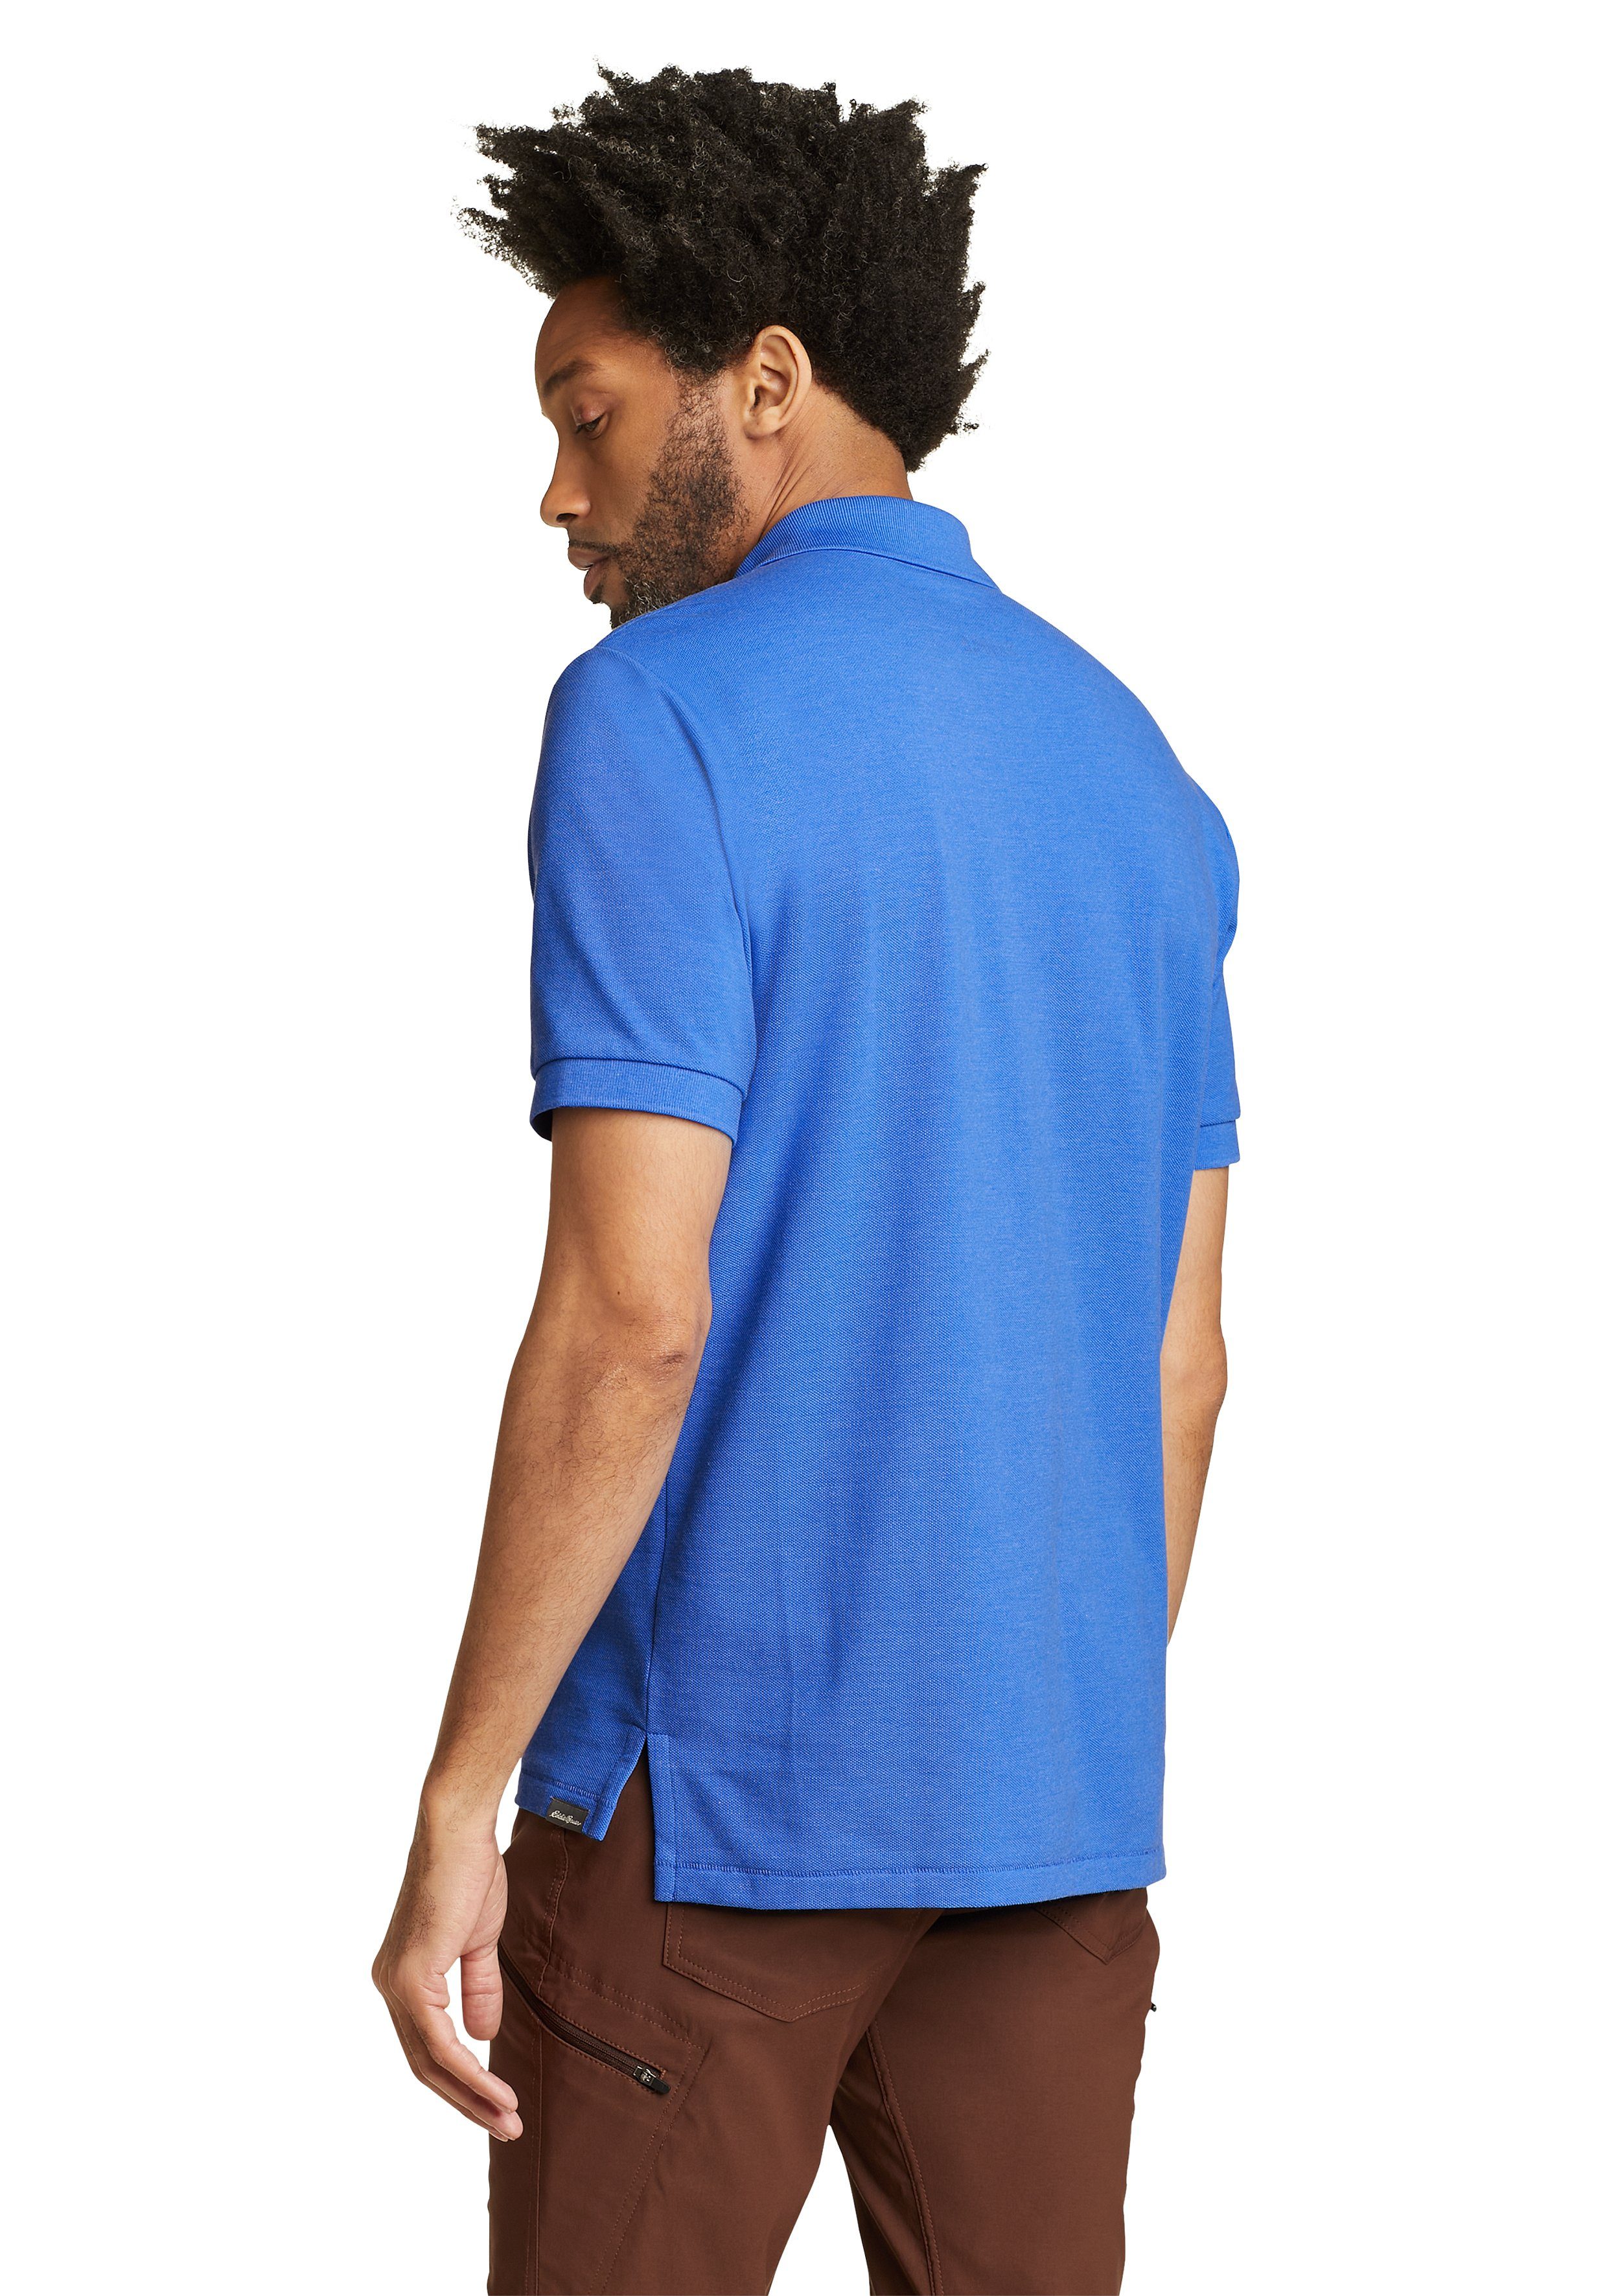 Eddie Bauer Poloshirt - Pro Brilliantes Poloshirt Blau Field bestickt